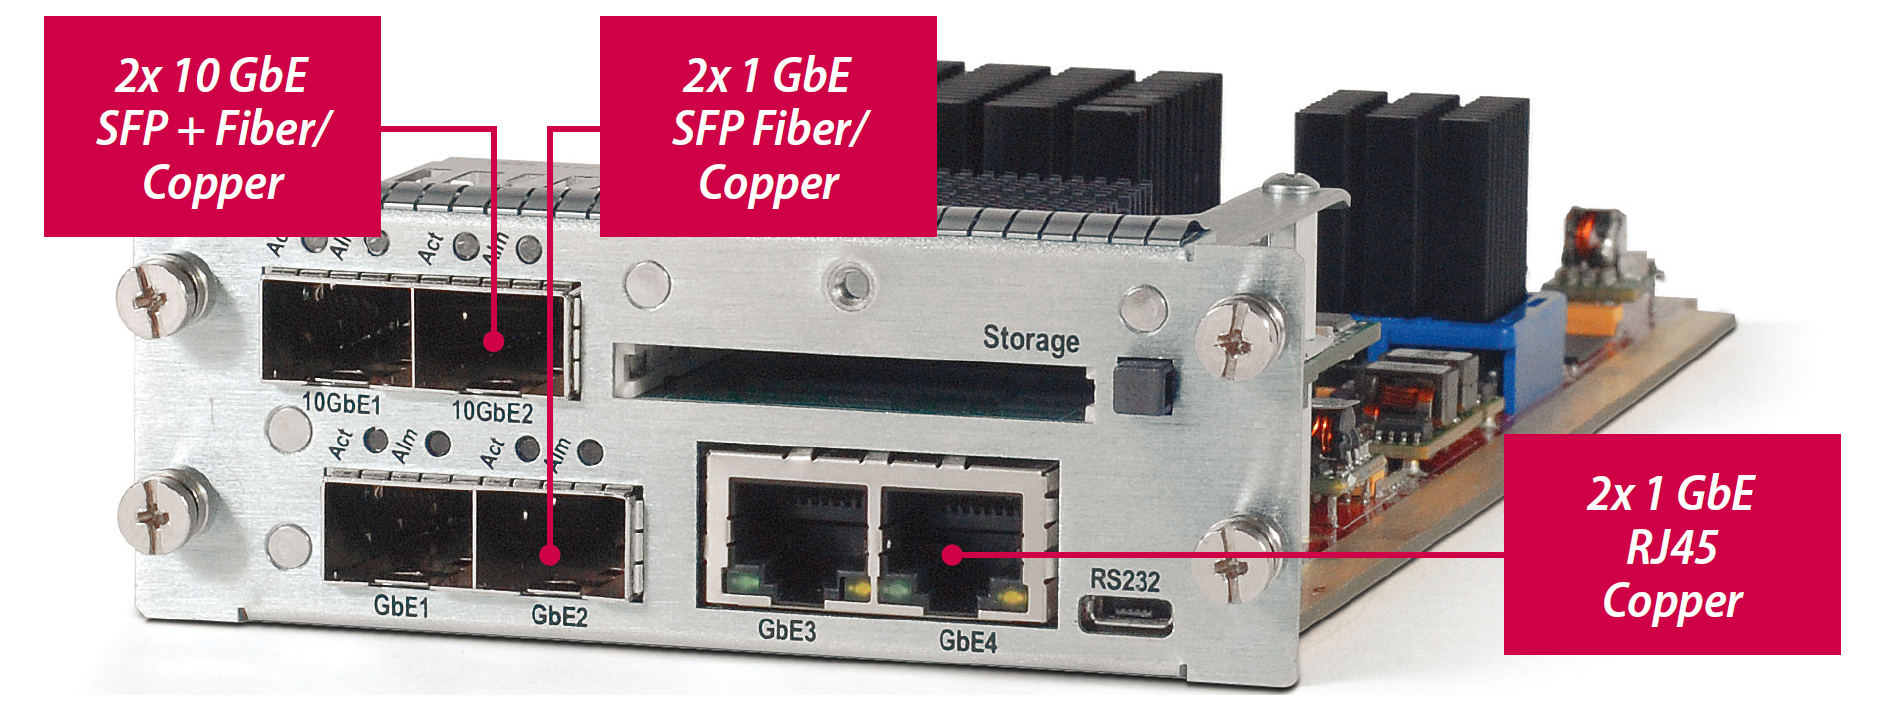 Опциональный модуль Quad GbE I/O в ProStream™ 9100 для обработки до 2 Gb трафика